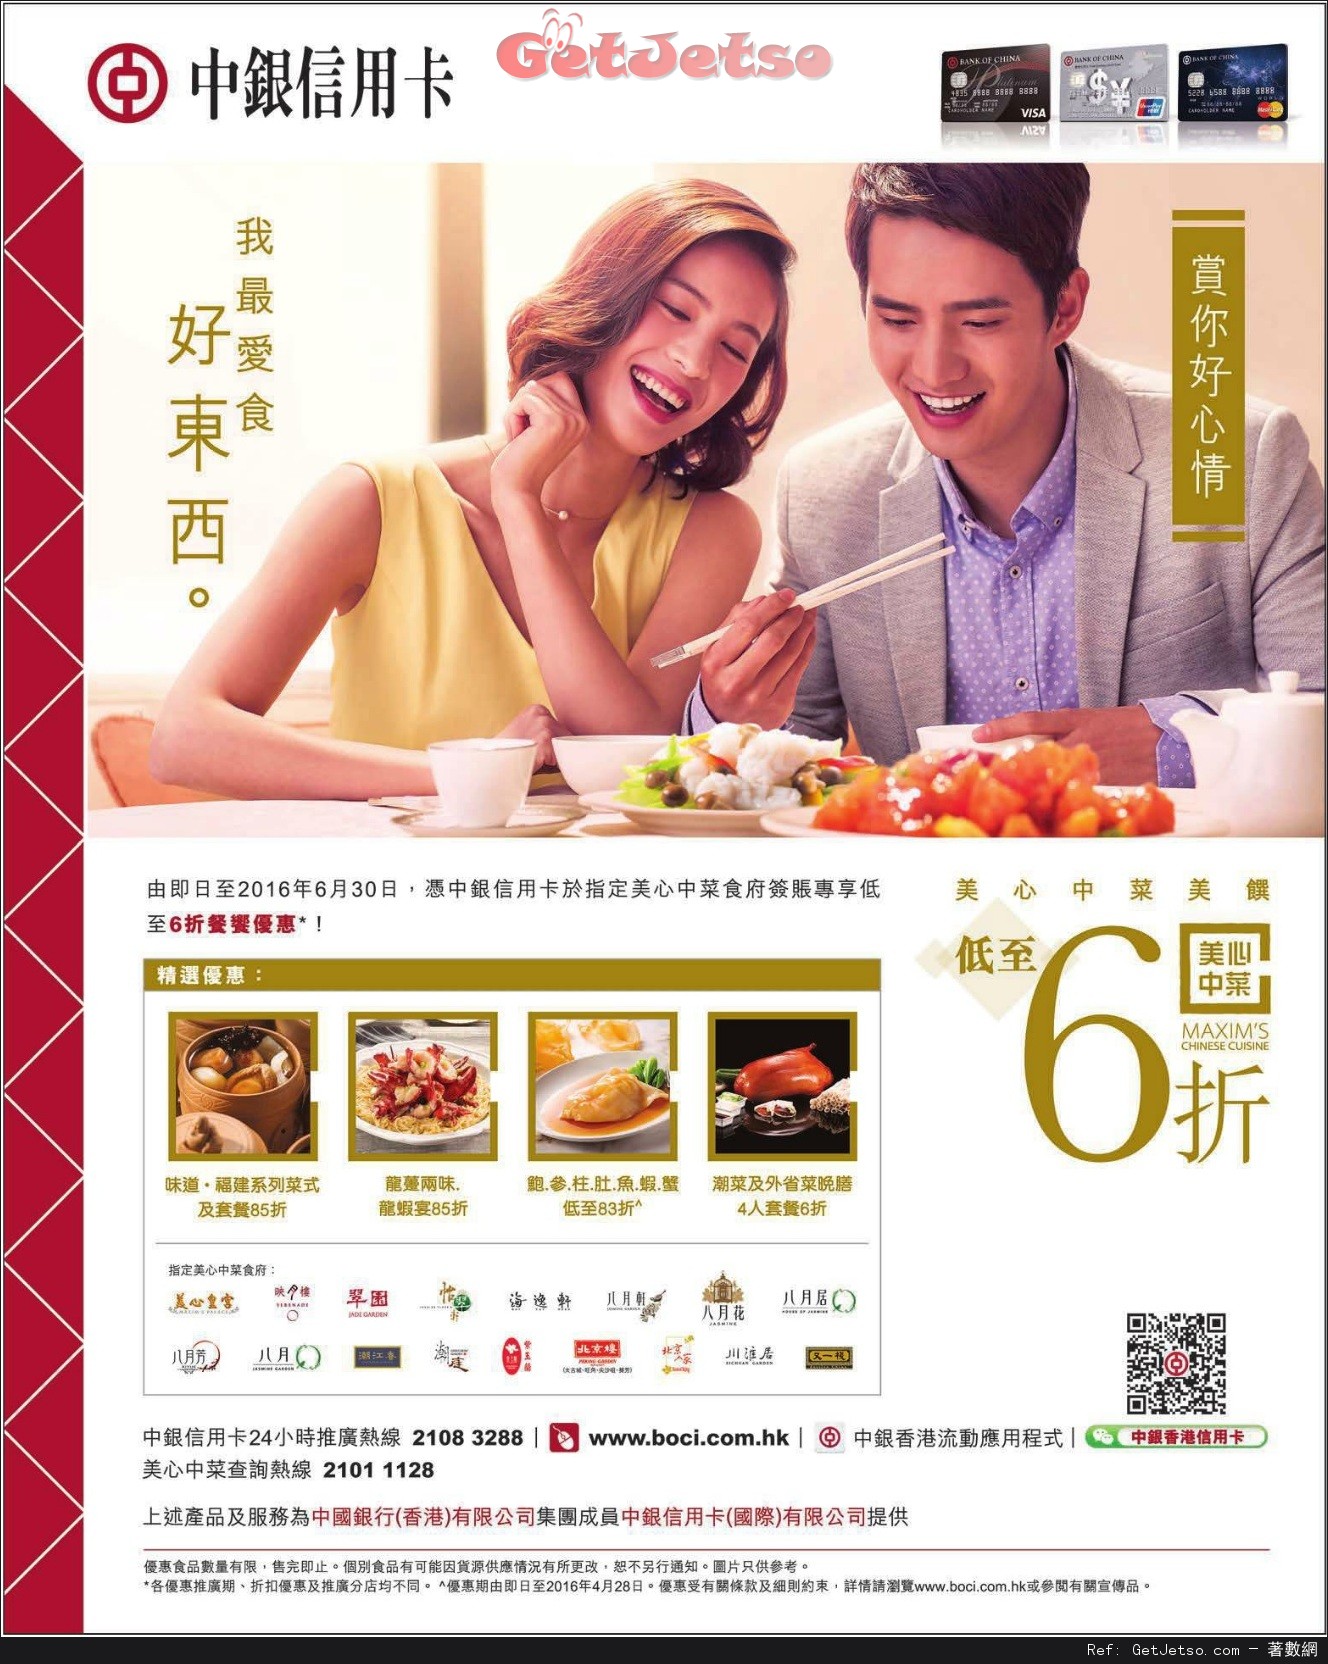 中銀信用卡享指定美心中菜食府低至6折優惠(至16年6月30日)圖片1